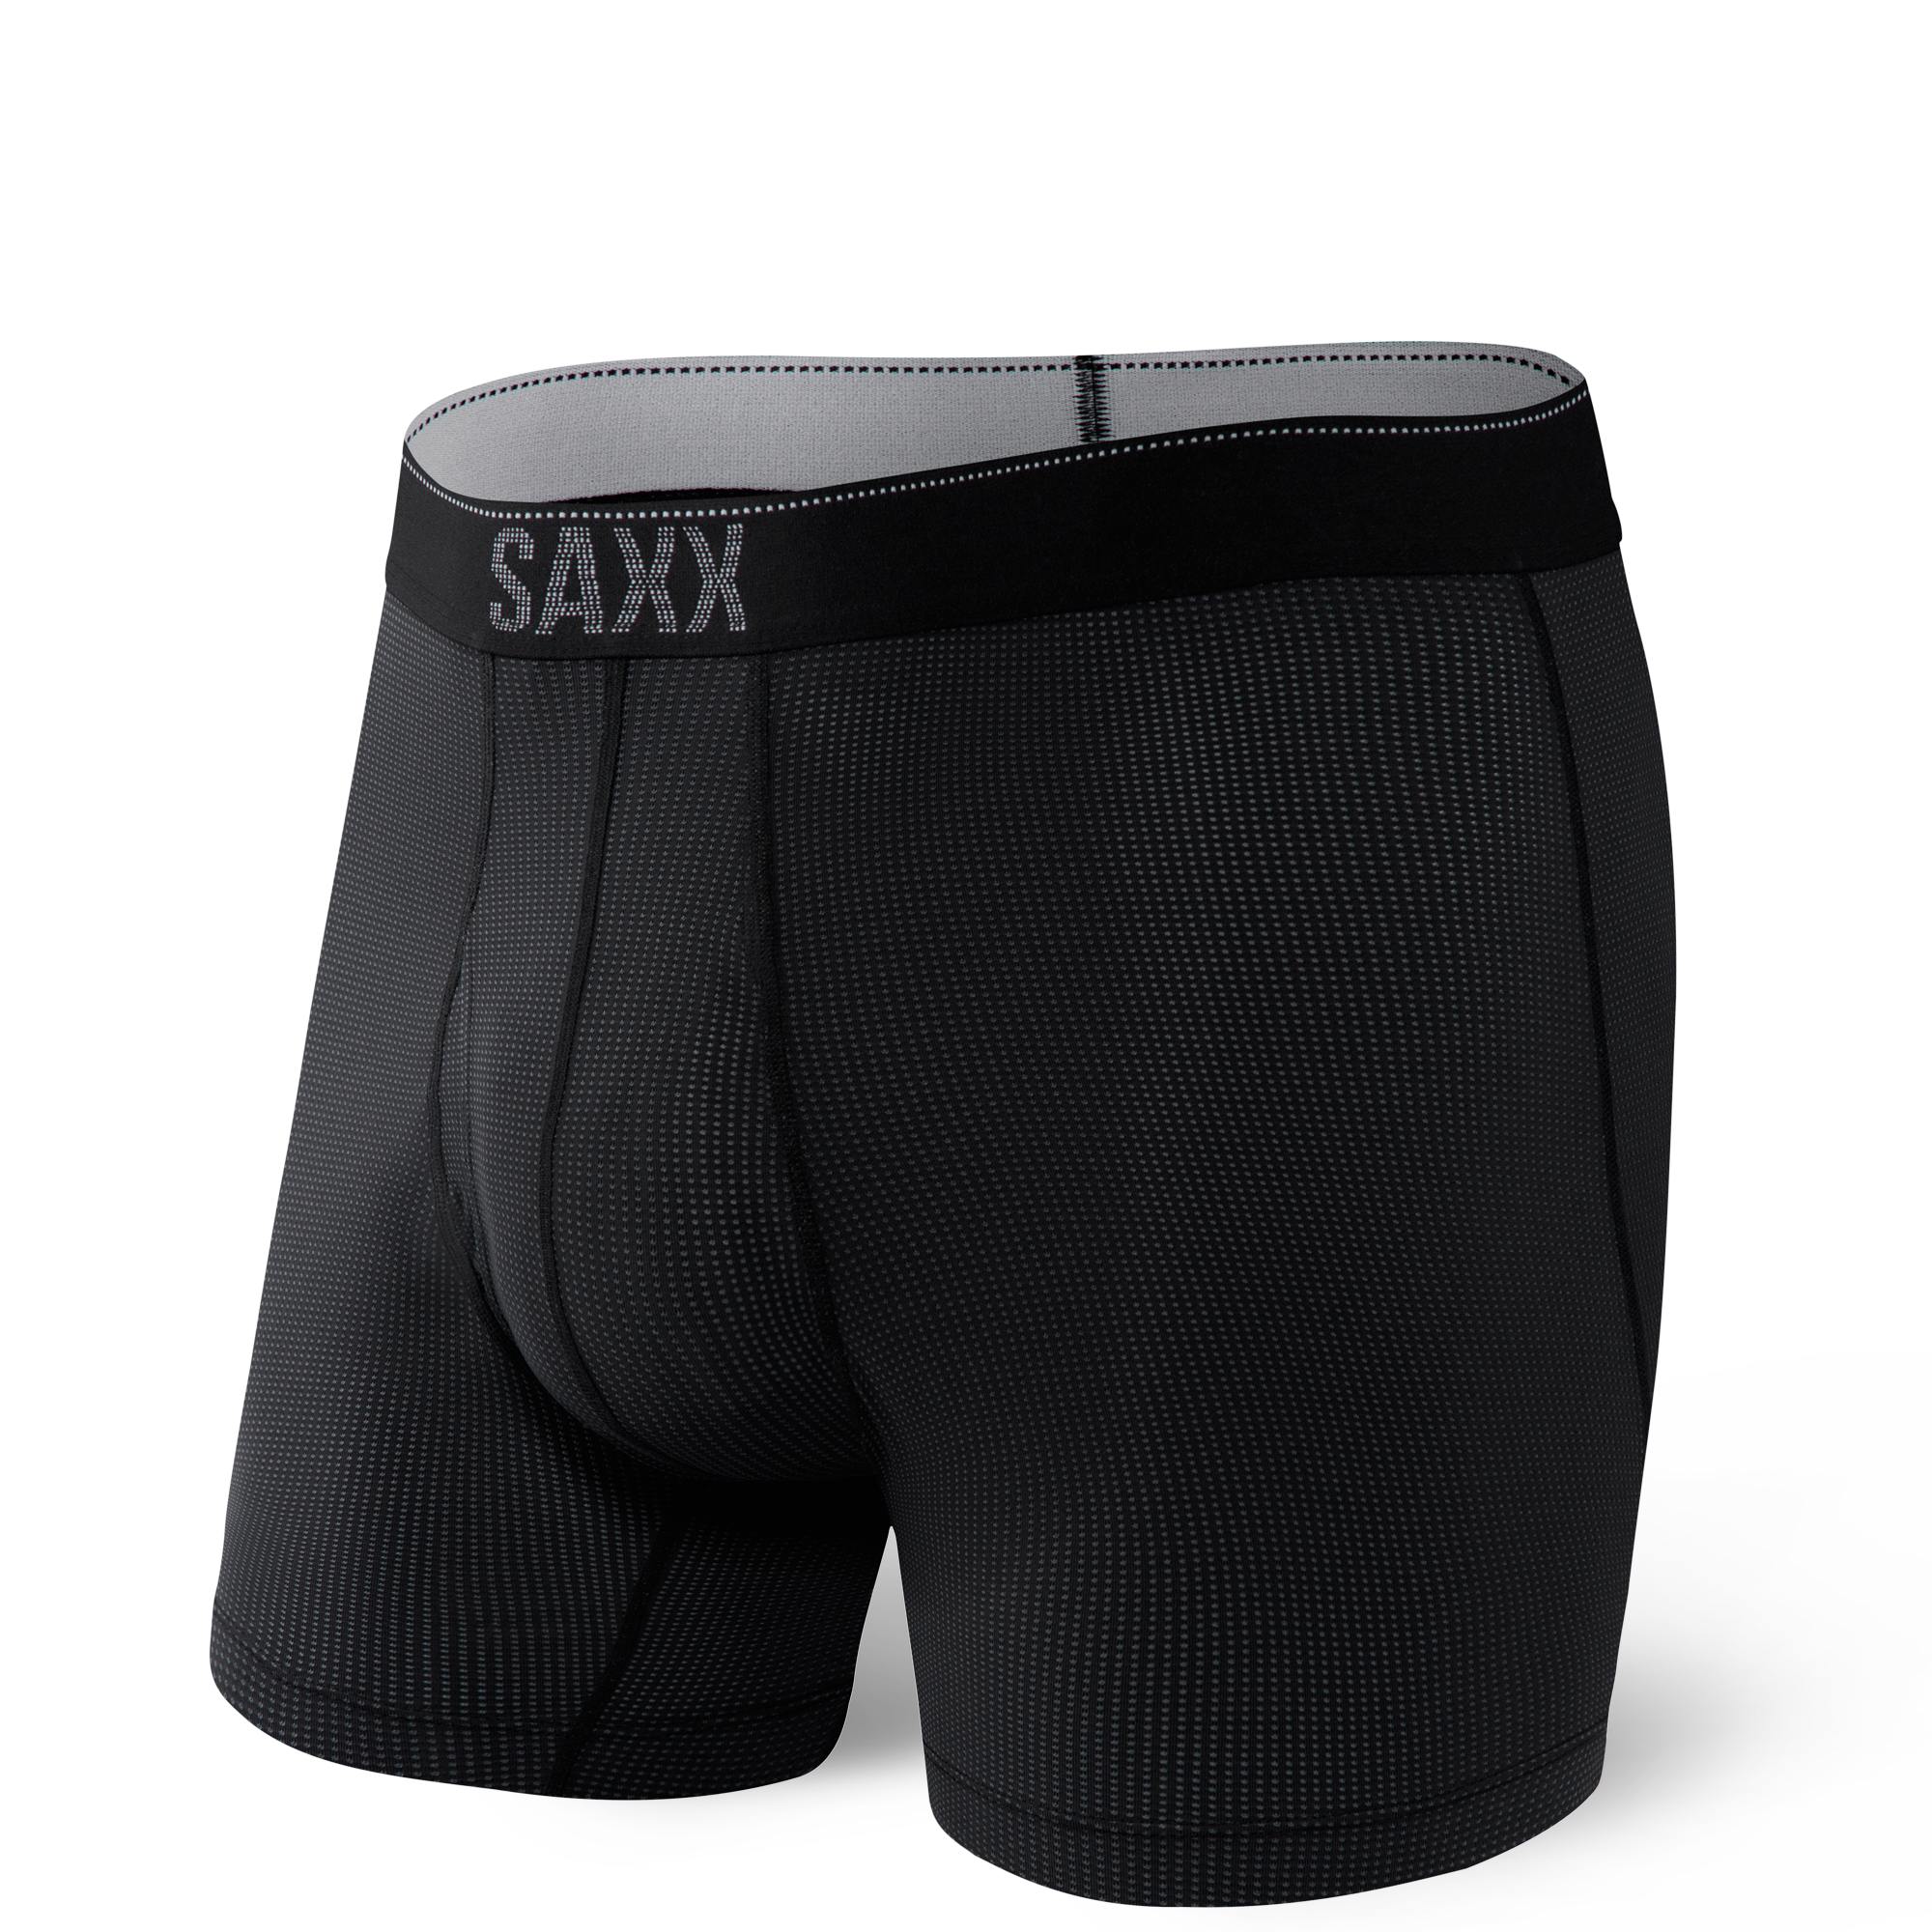 Quest Boxer Brief in Black II by SAXX Underwear Co. - Hansen's